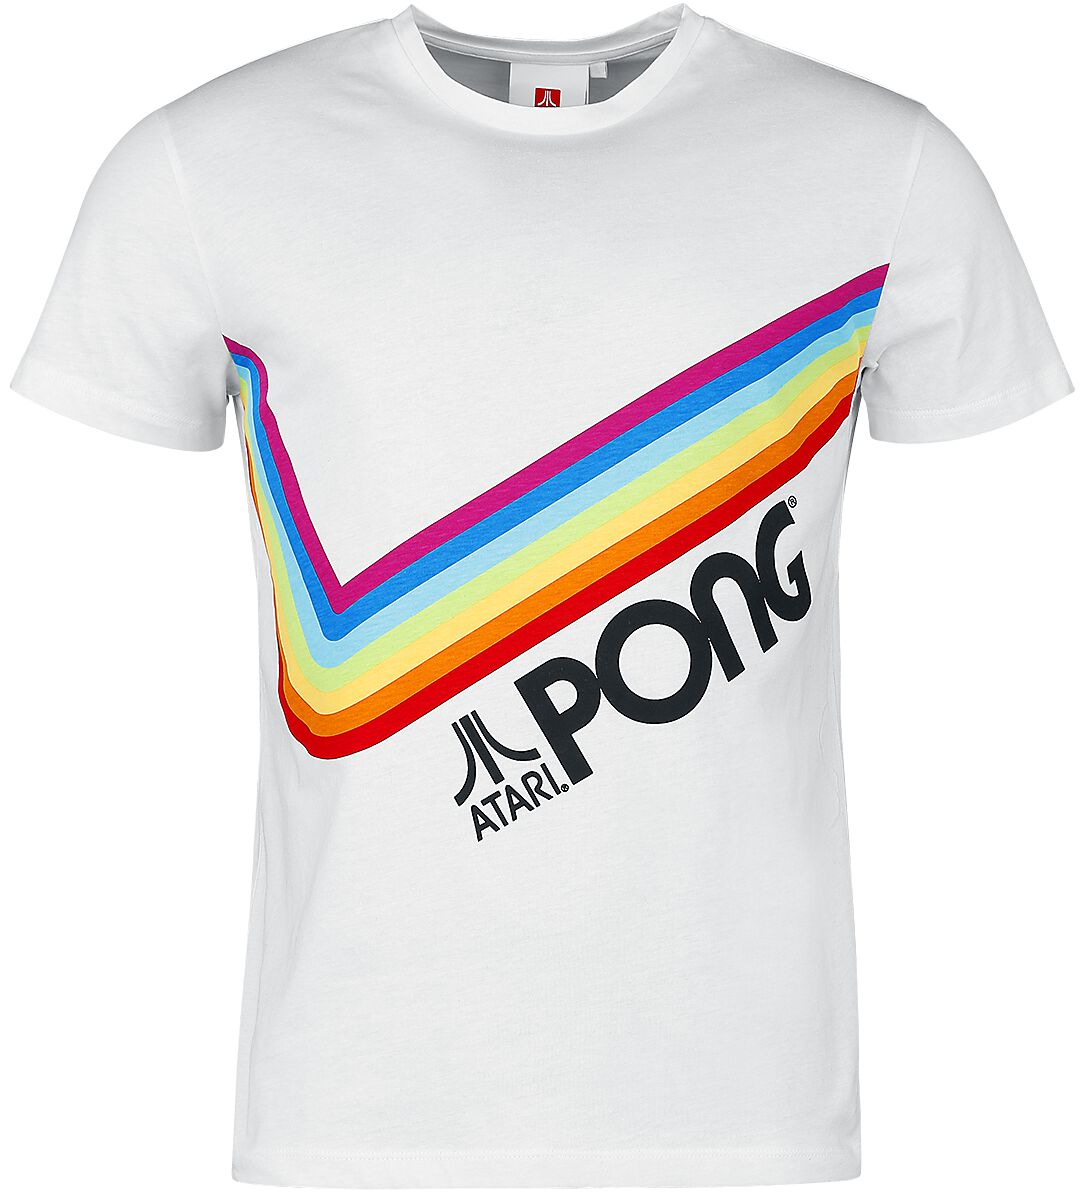 Atari - Gaming T-Shirt - Pong - Pride Rainbow - S bis 3XL - für Männer - Größe XXL - weiß  - EMP exklusives Merchandise!